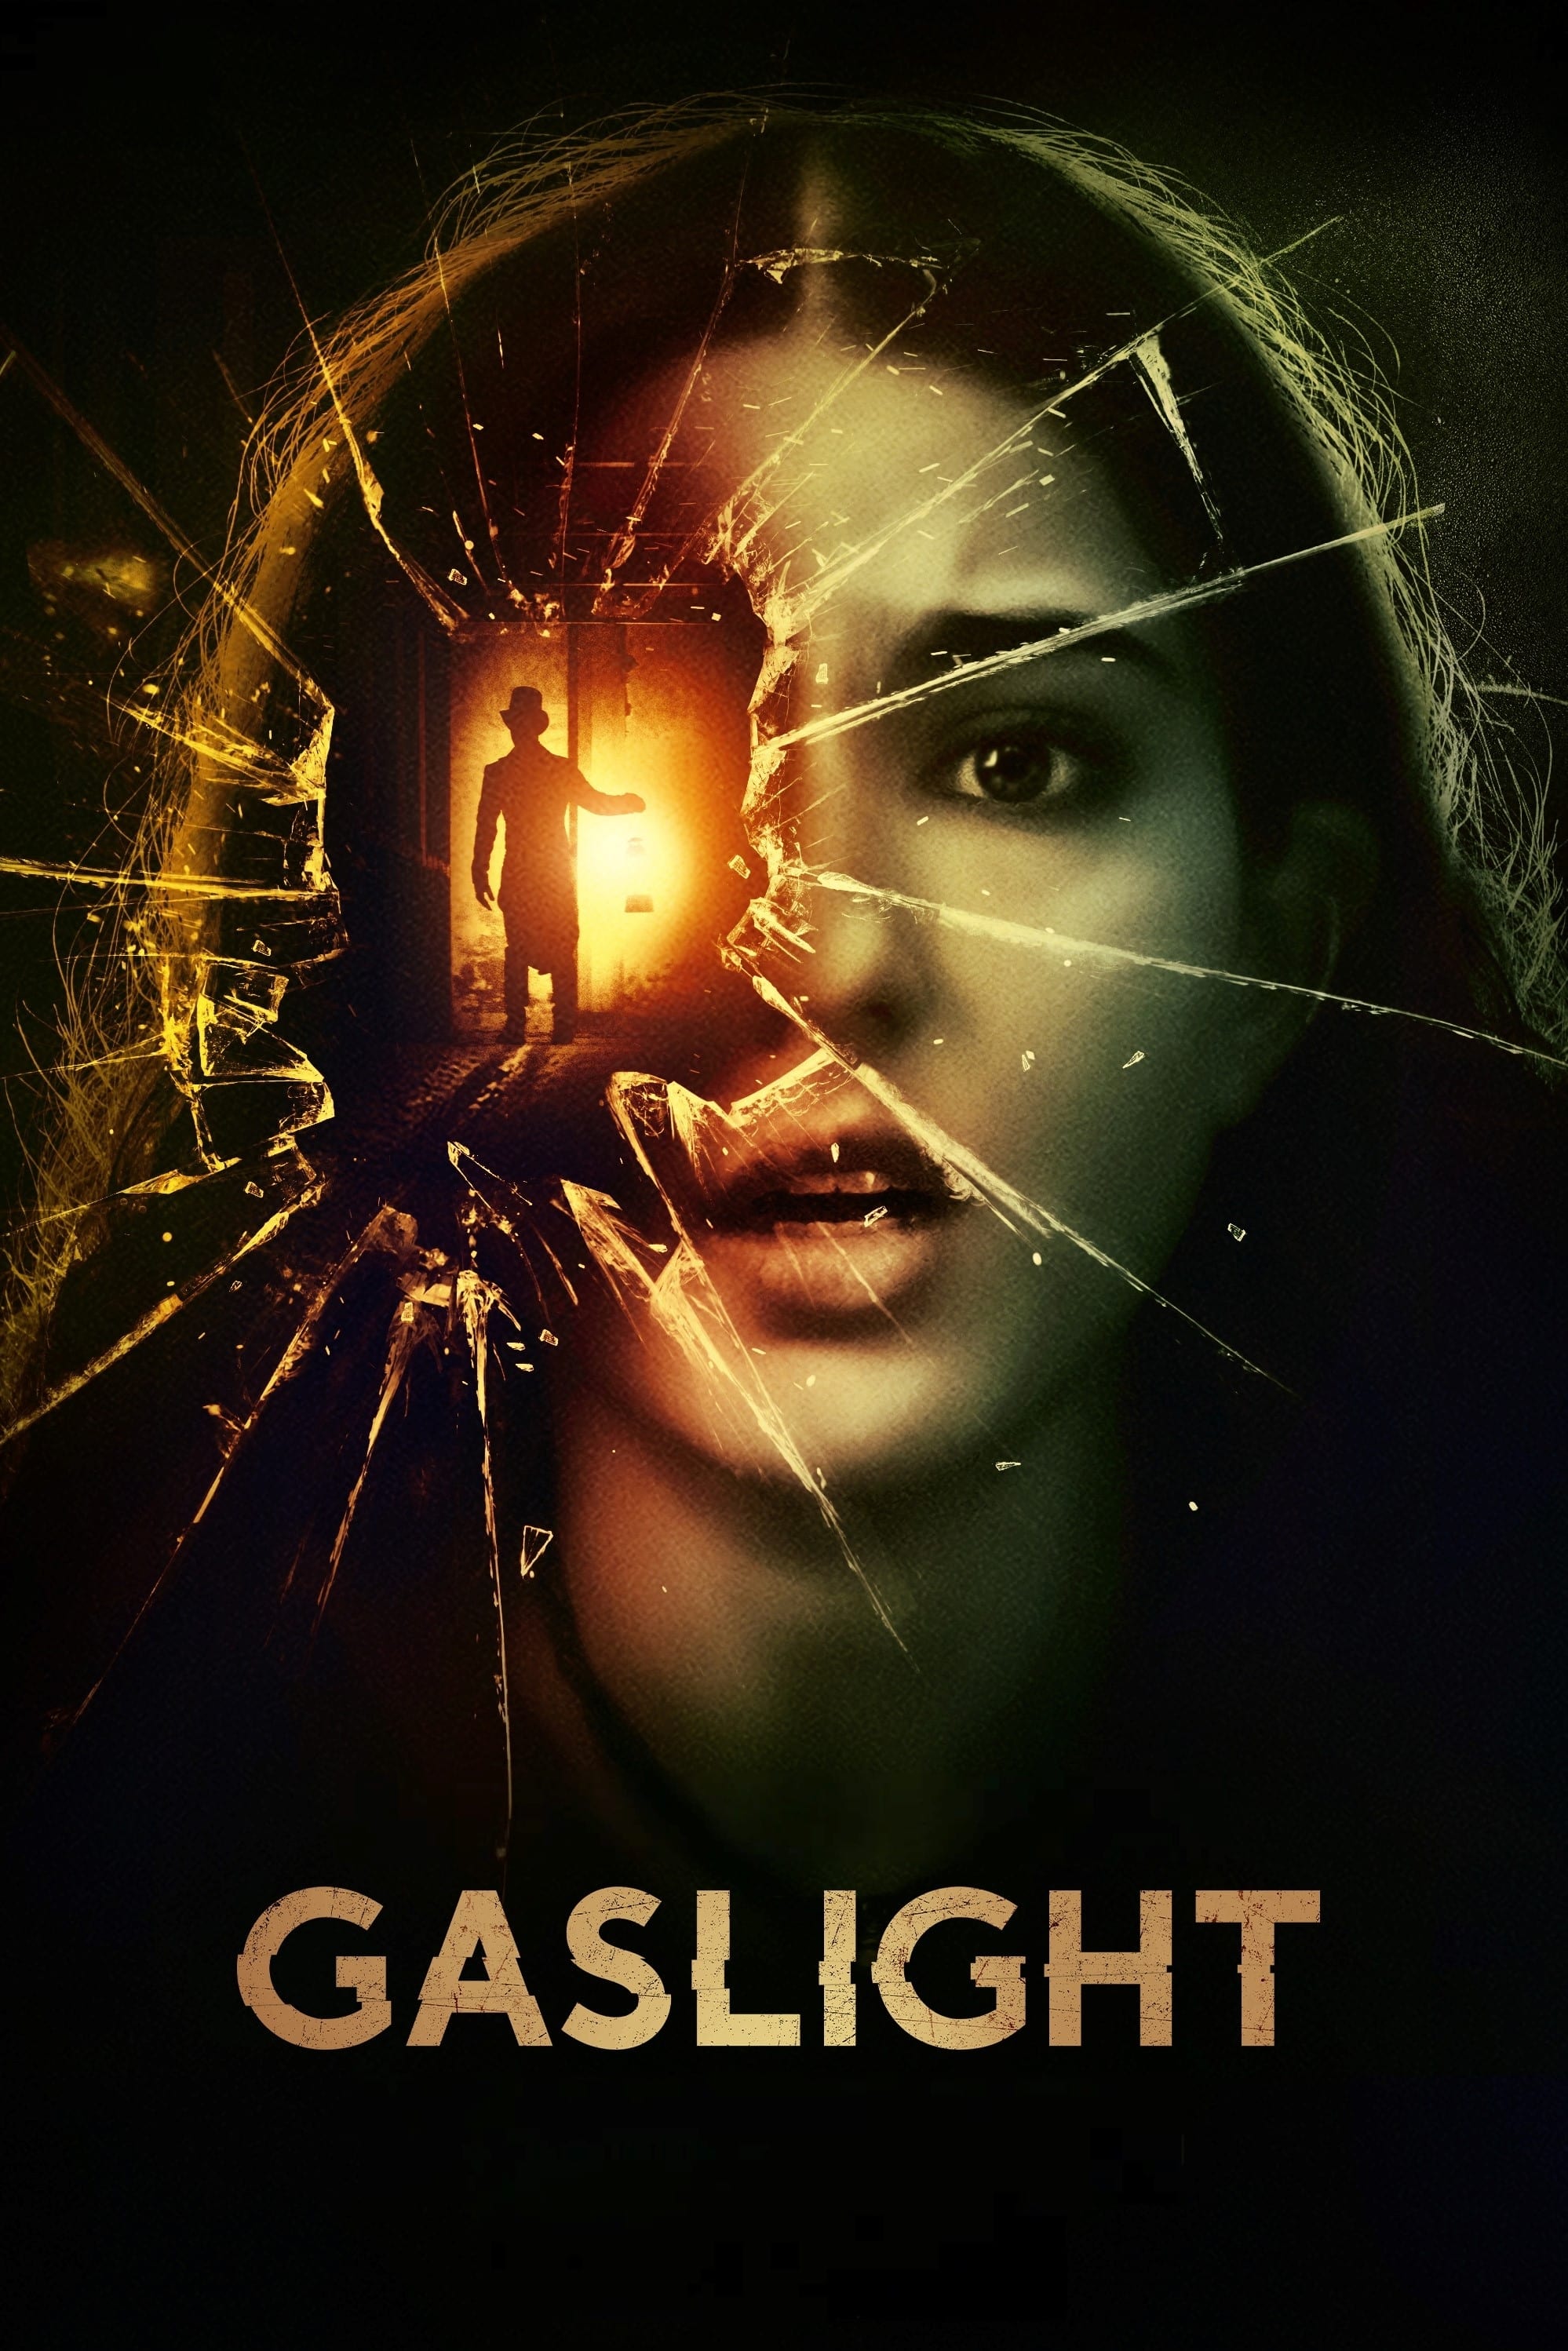 Image Gaslight